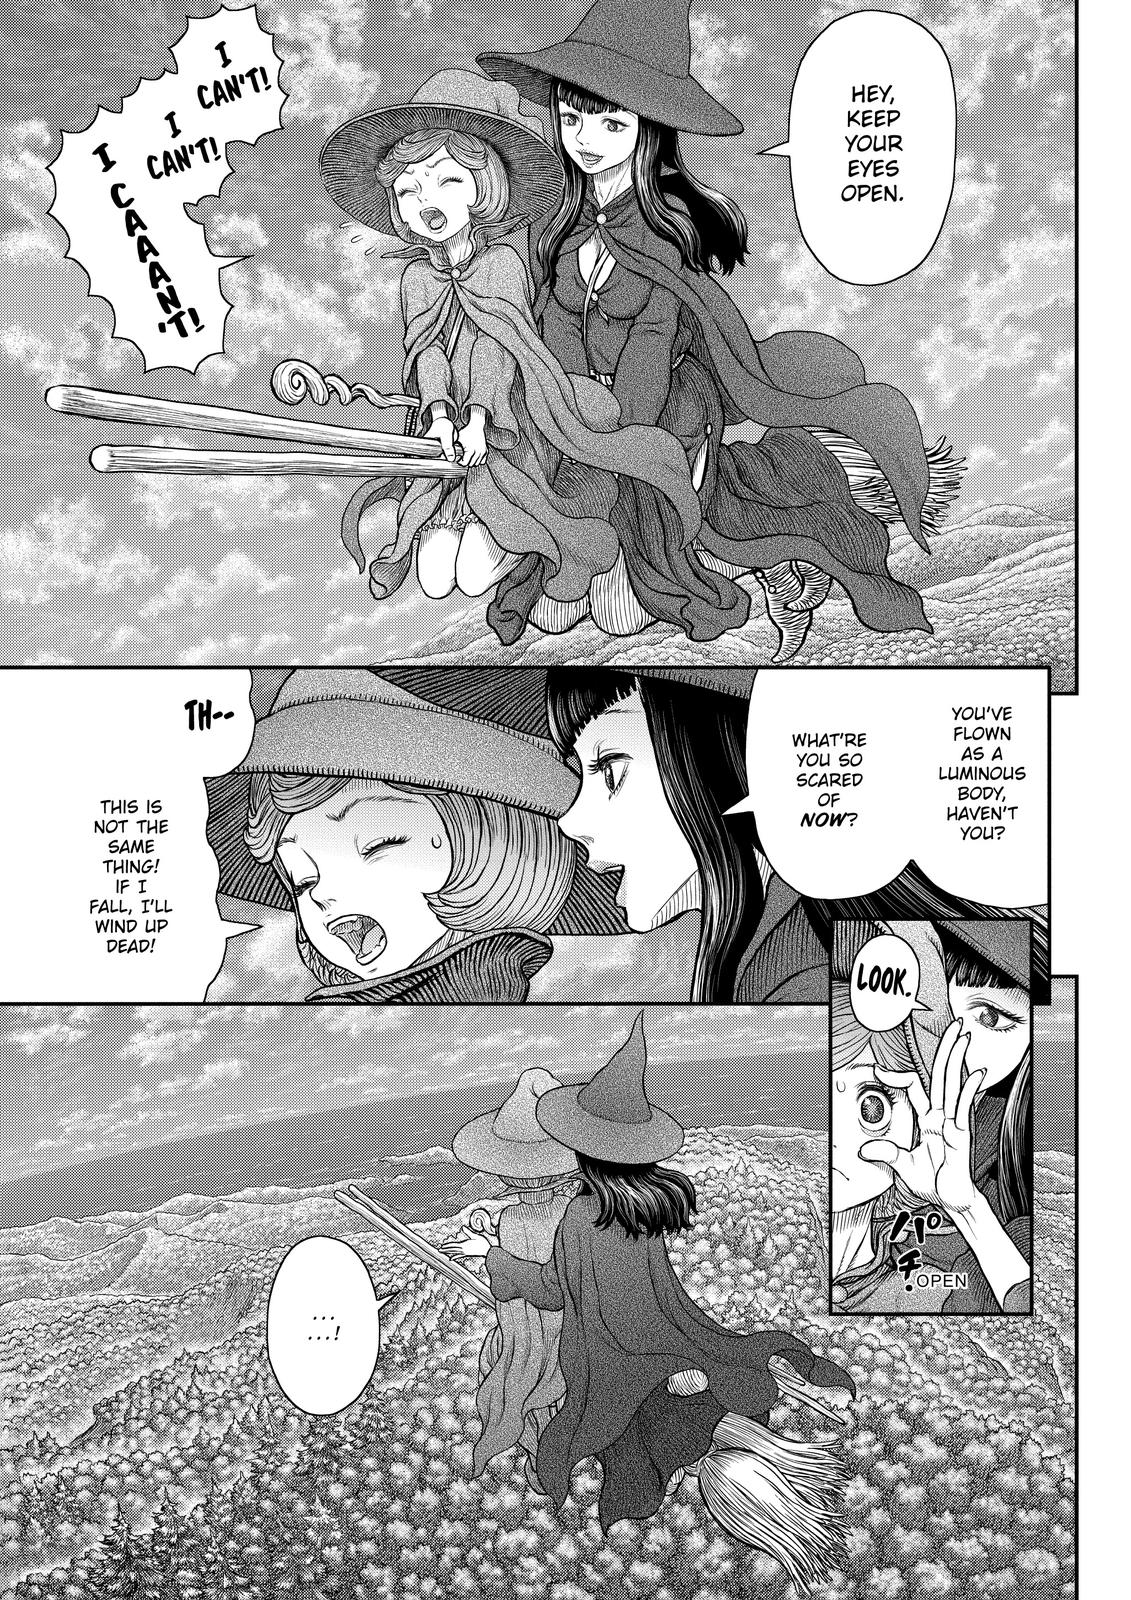 Berserk Manga Chapter 361 image 07